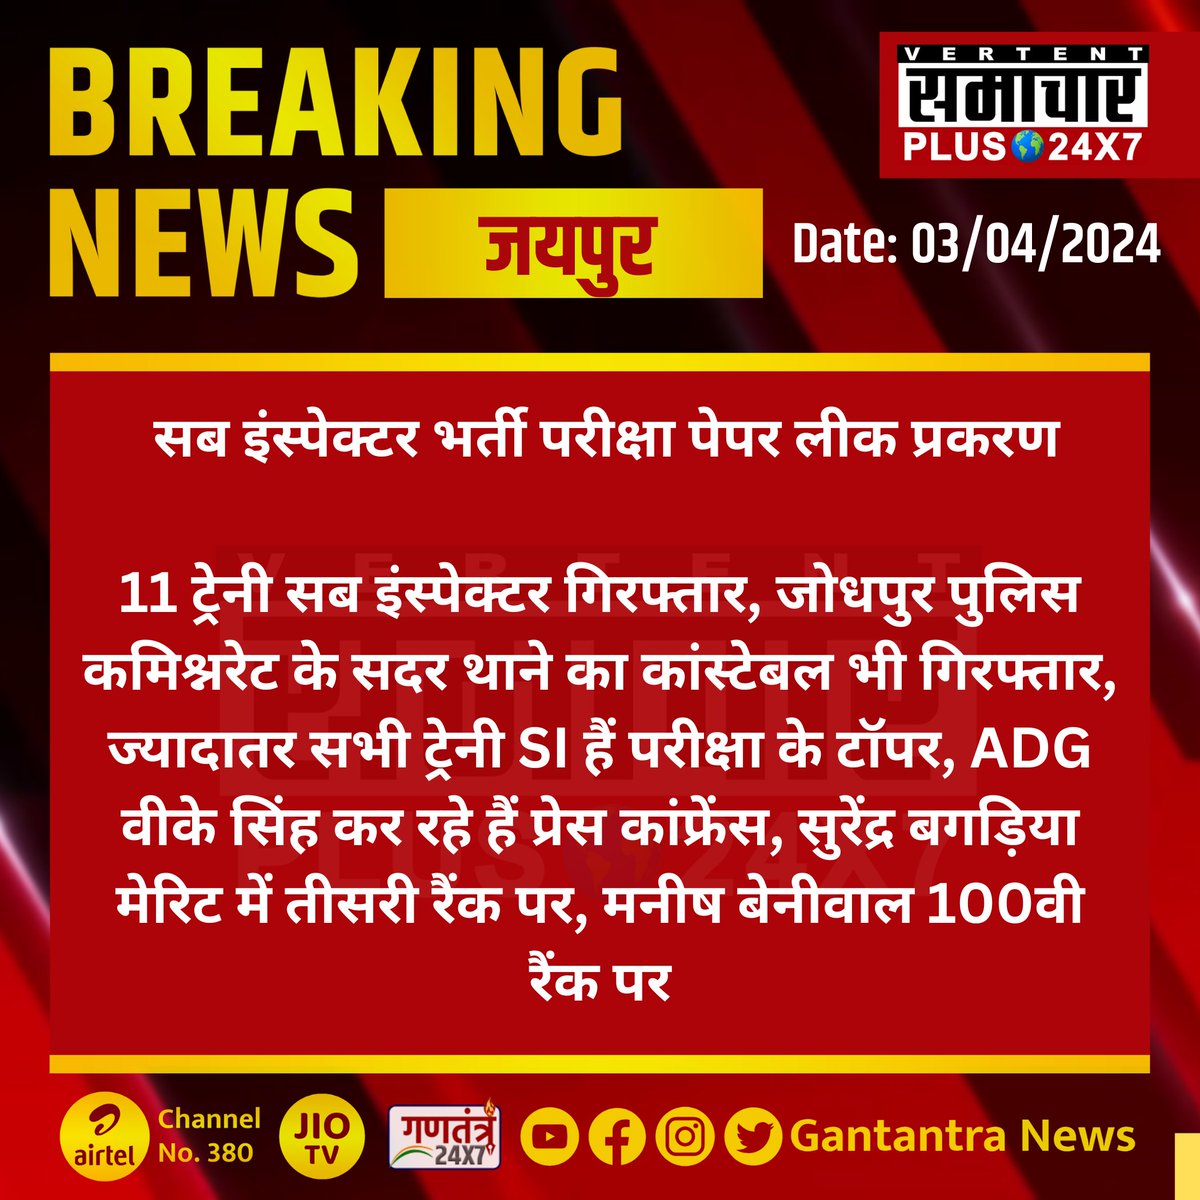 #जयपुर : सब इंस्पेक्टर भर्ती परीक्षा पेपर लीक प्रकरण

11 ट्रेनी सब इंस्पेक्टर गिरफ्तार...

#Jaipur #RajasthanNews #breakingnews‌ #LatestNews #GantantraNews #paperLeak #SOG @Sog_Rajasthan